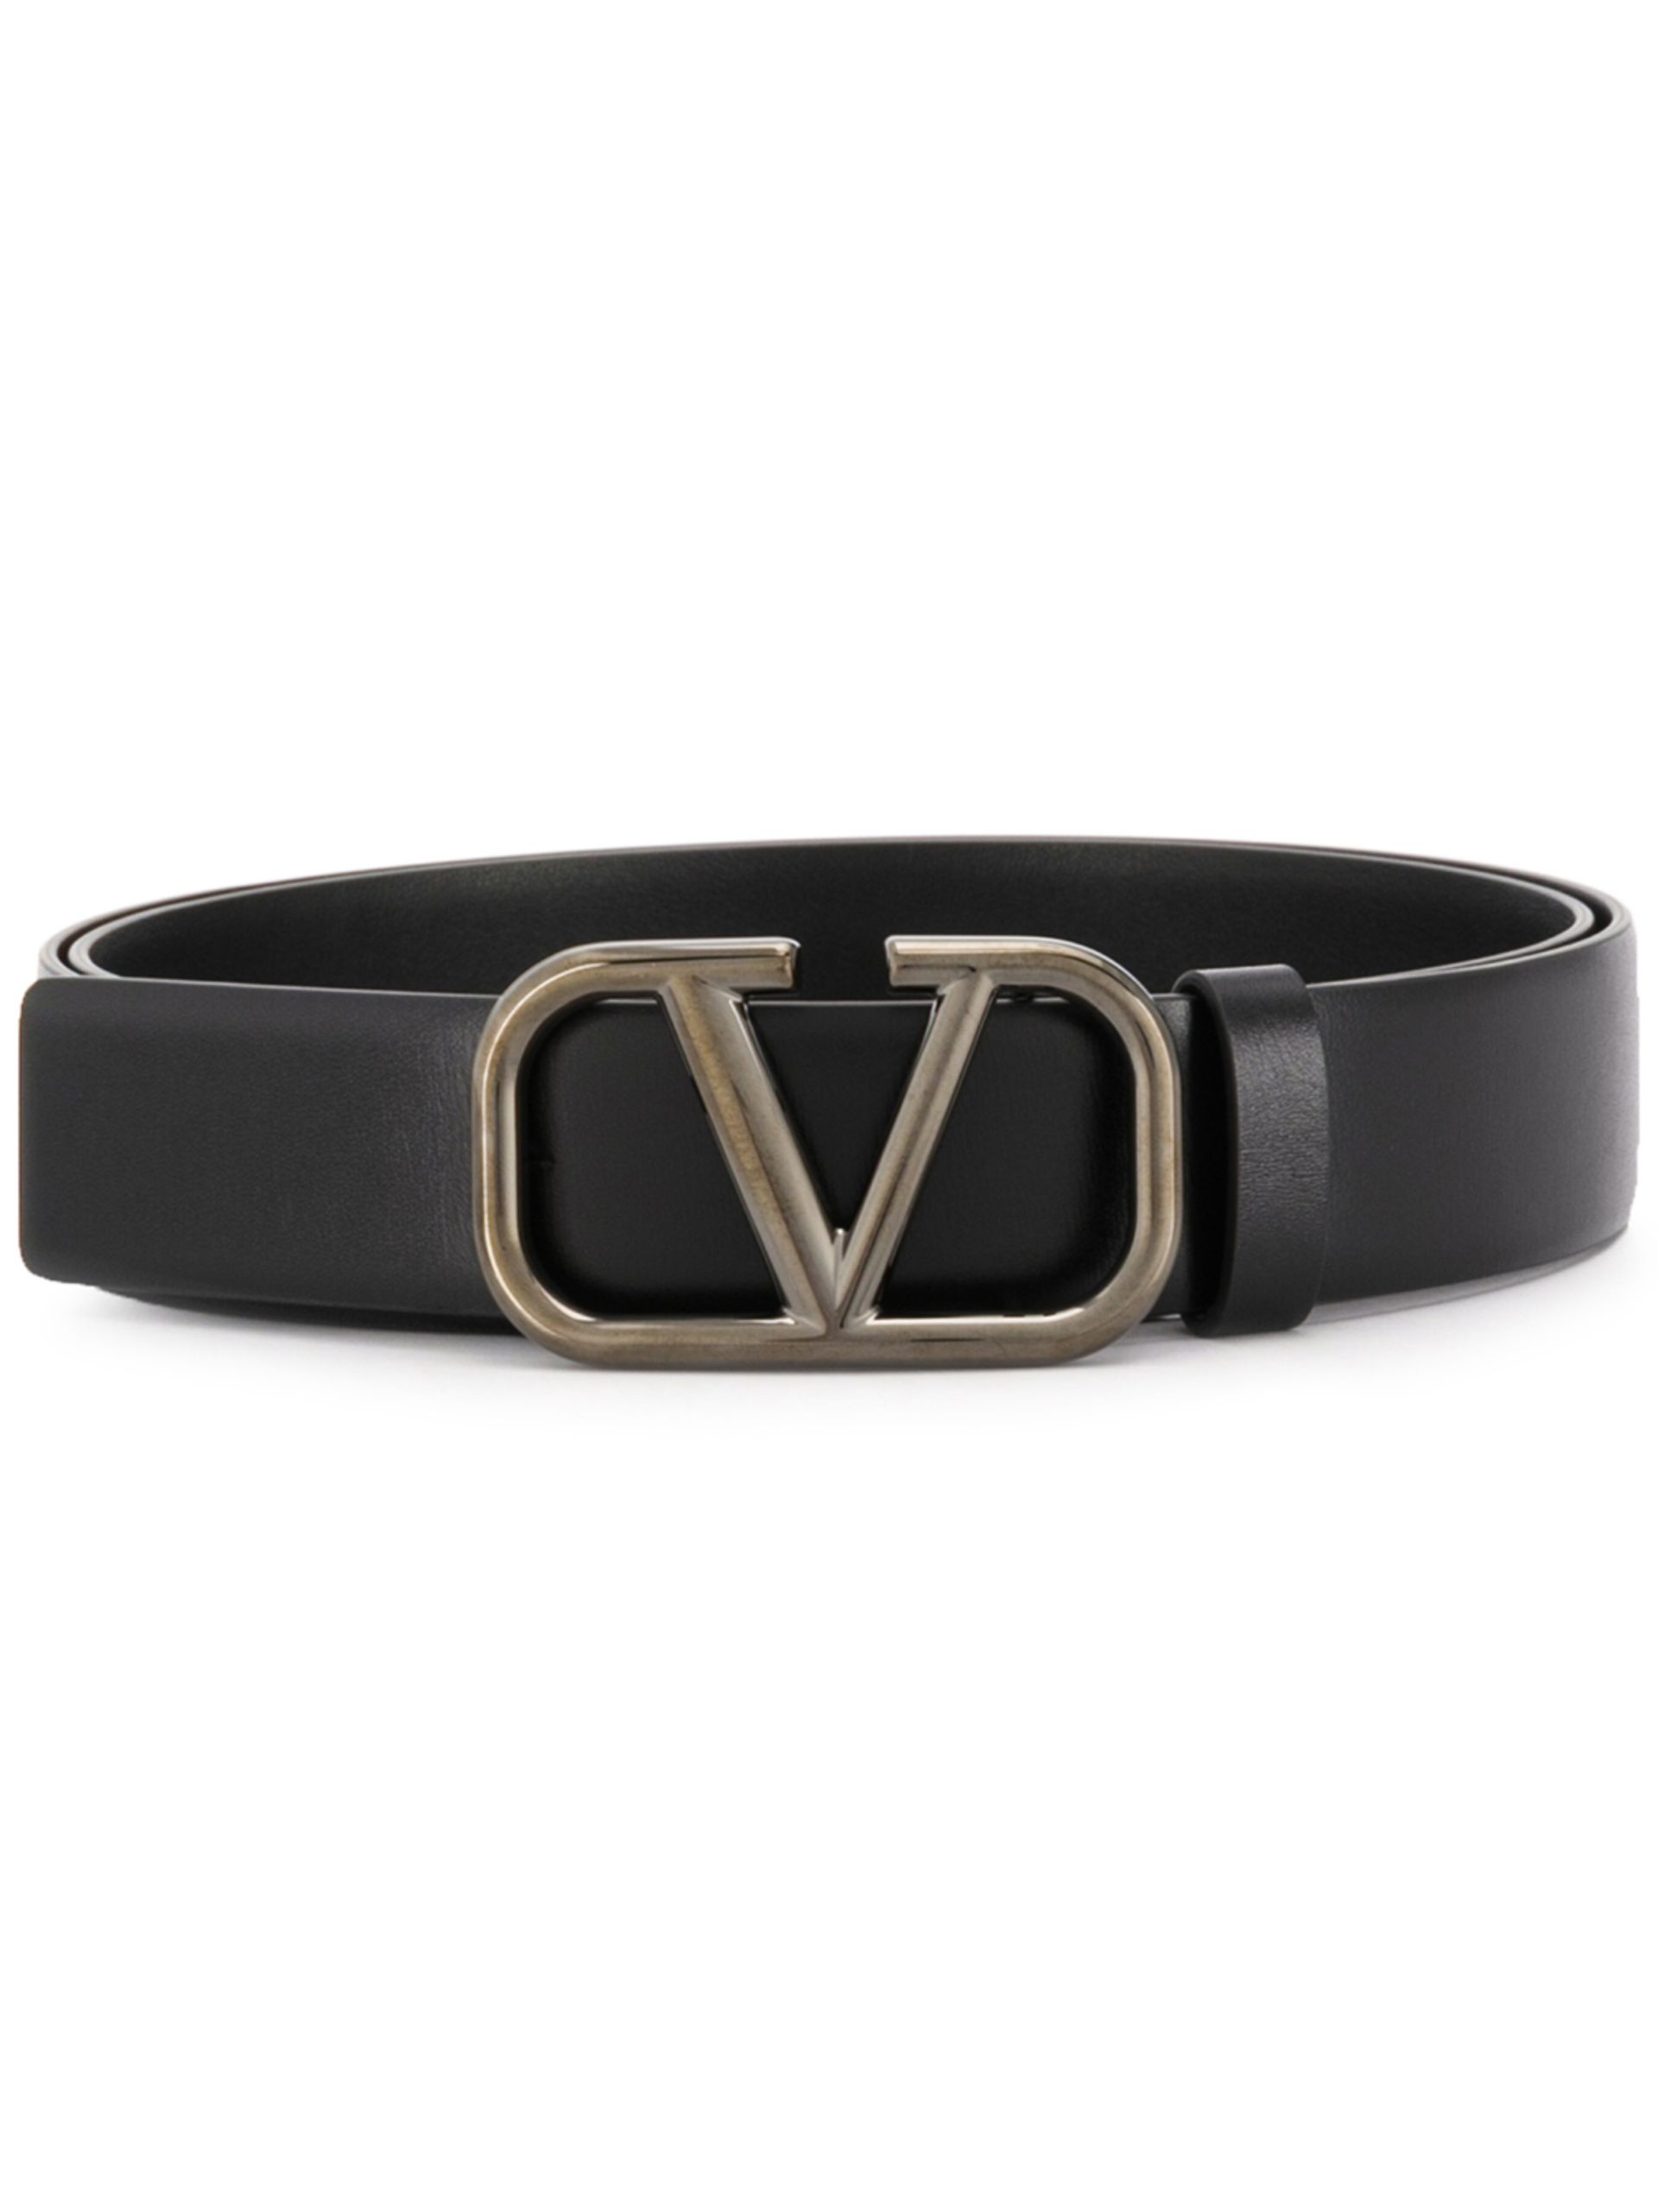 Black VLogo Signature Leather Belt - 1